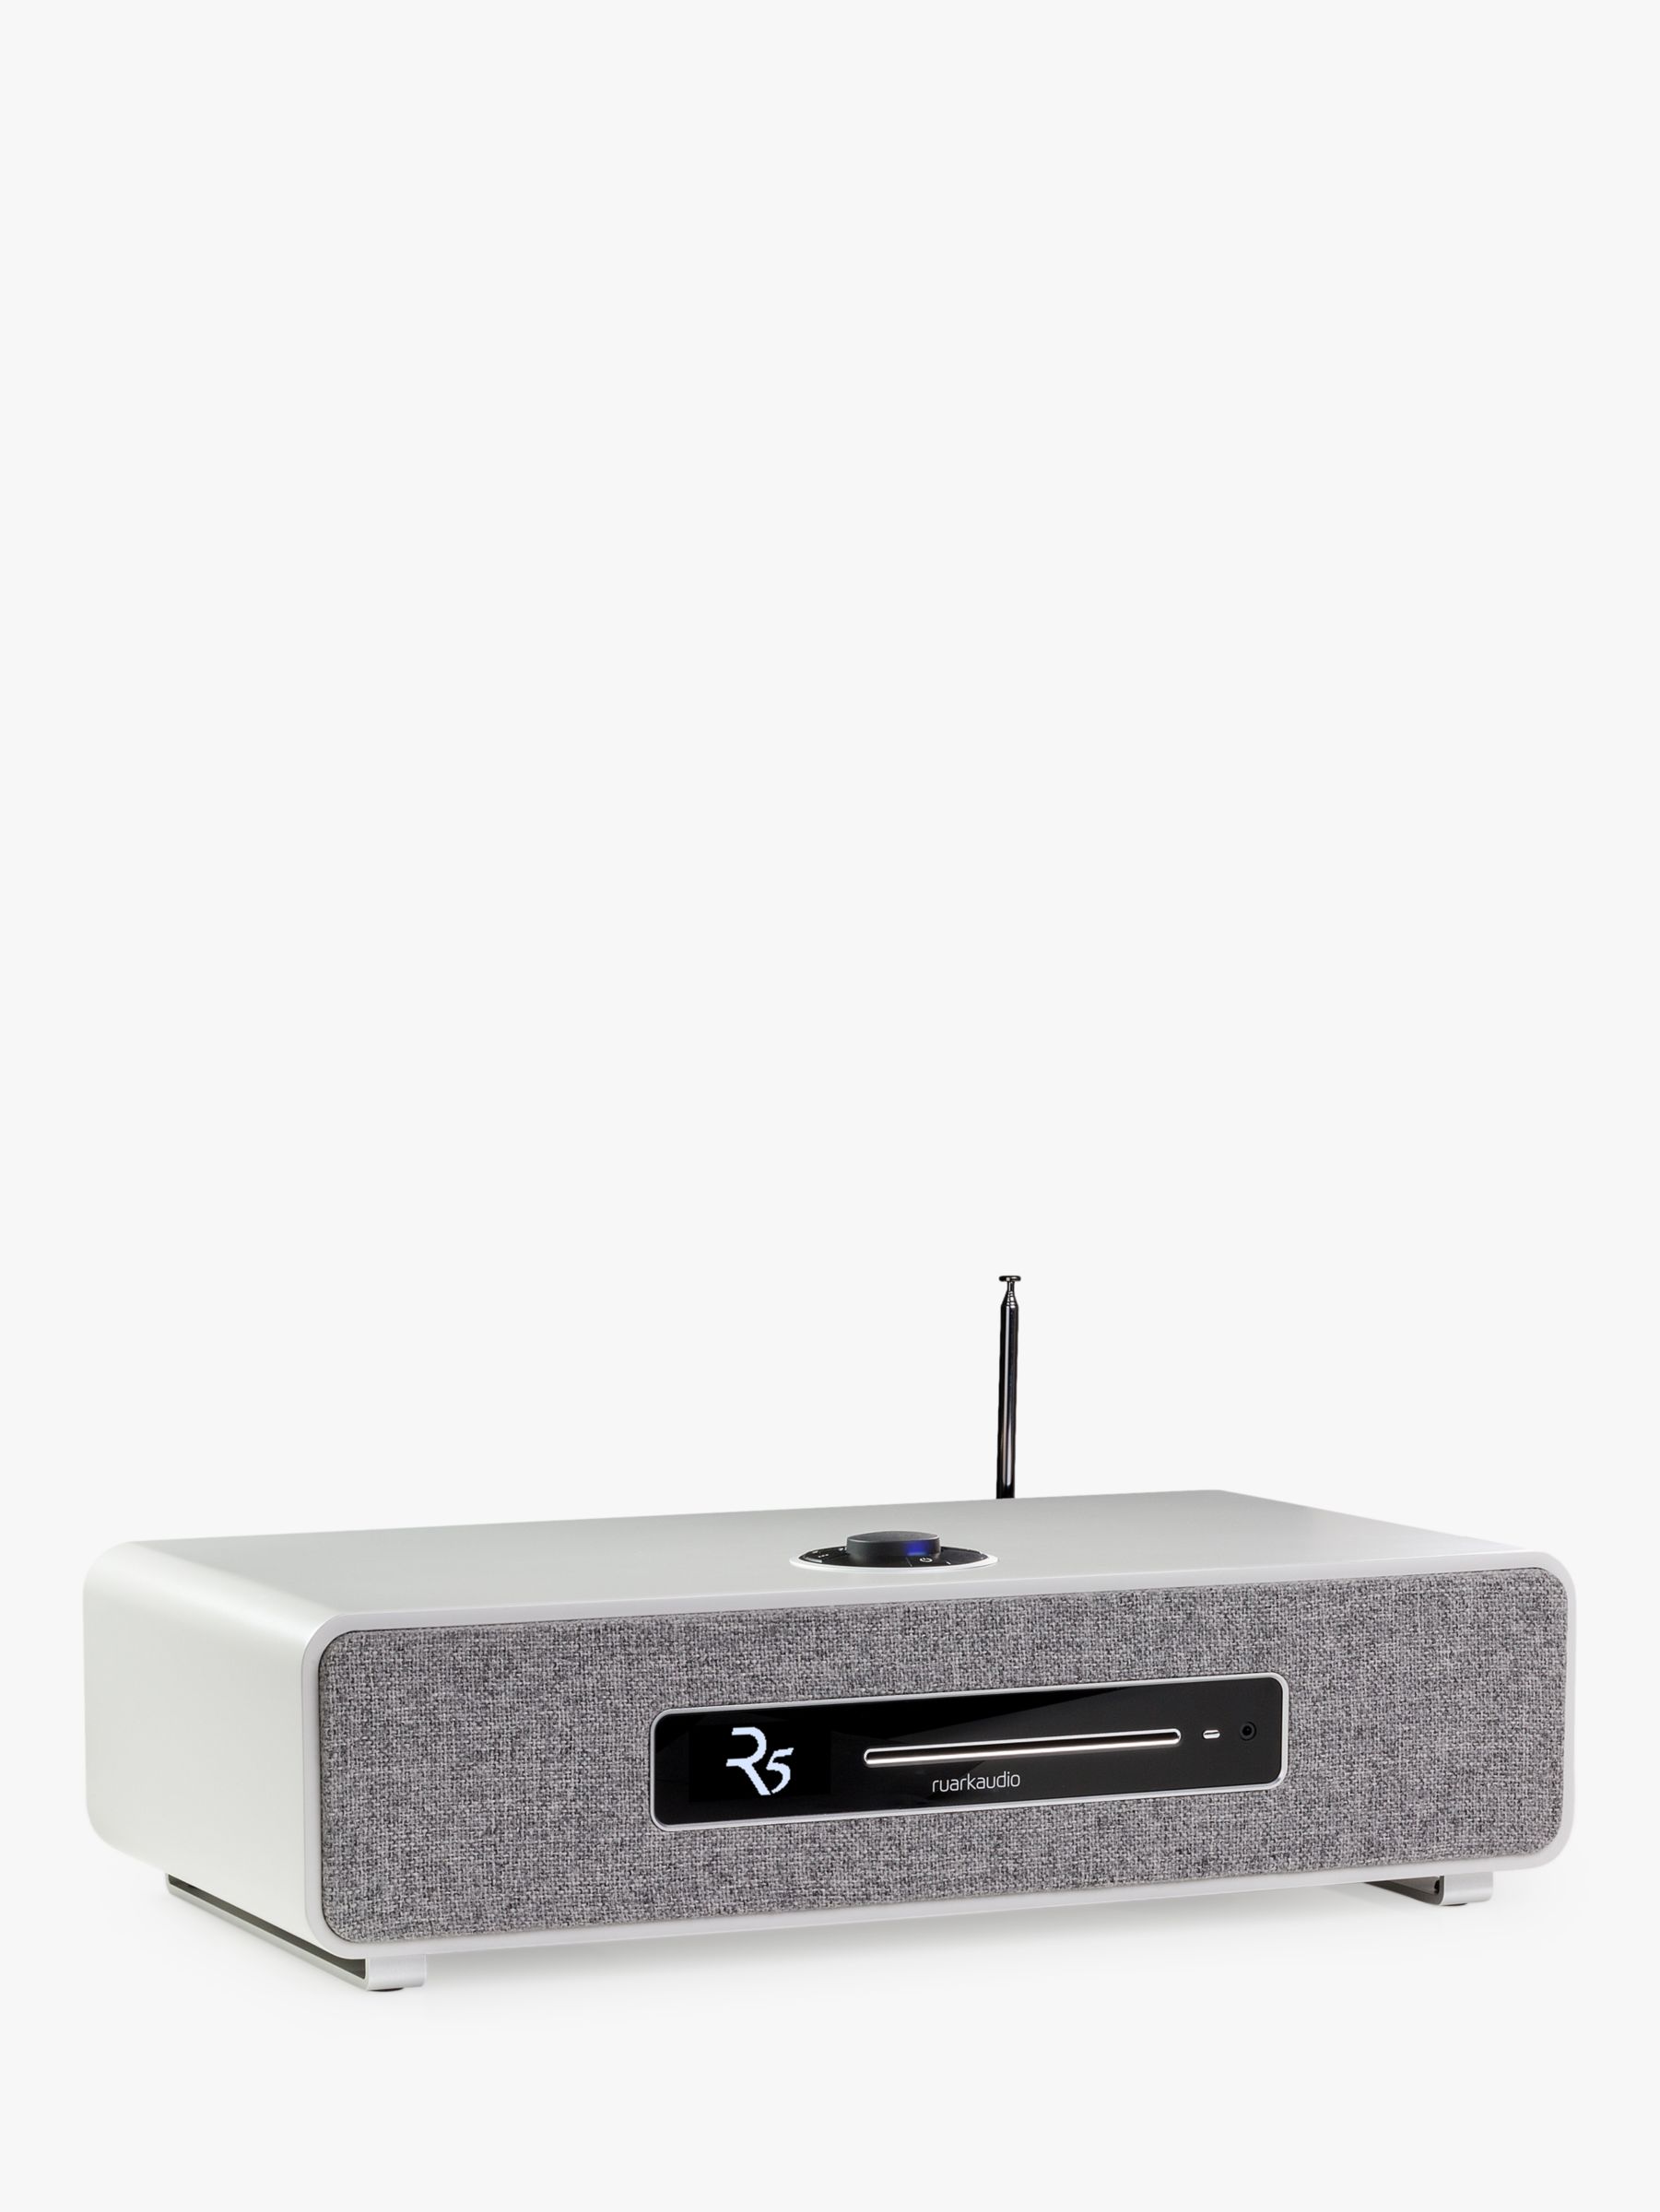 Ruark R5 DAB/DAB+/FM/Internet Radio & CD Bluetooth Wi-Fi Wireless All-In-One Music System